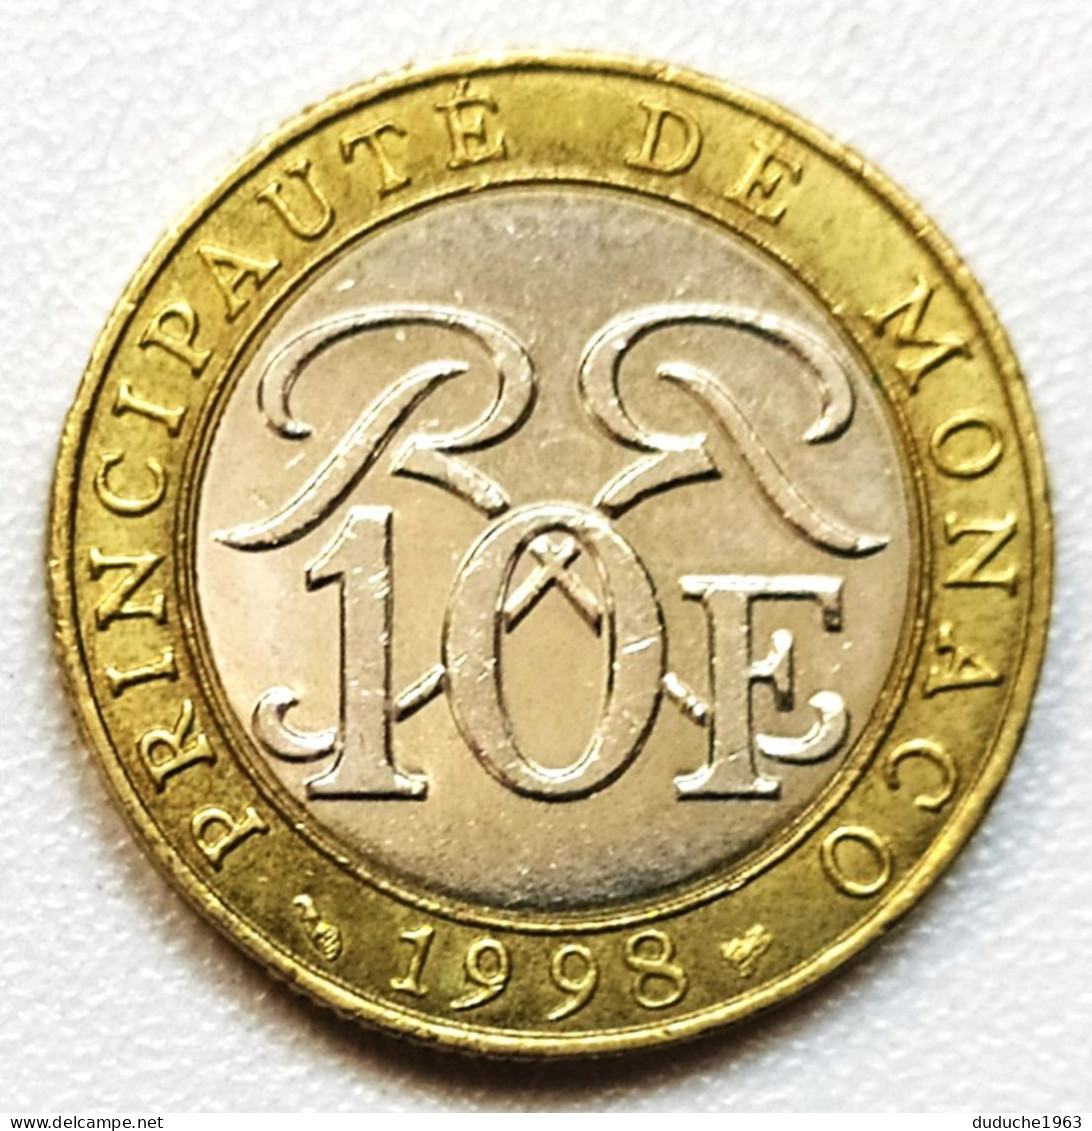 Monaco - 10 Francs 1998 - 1960-2001 Nouveaux Francs